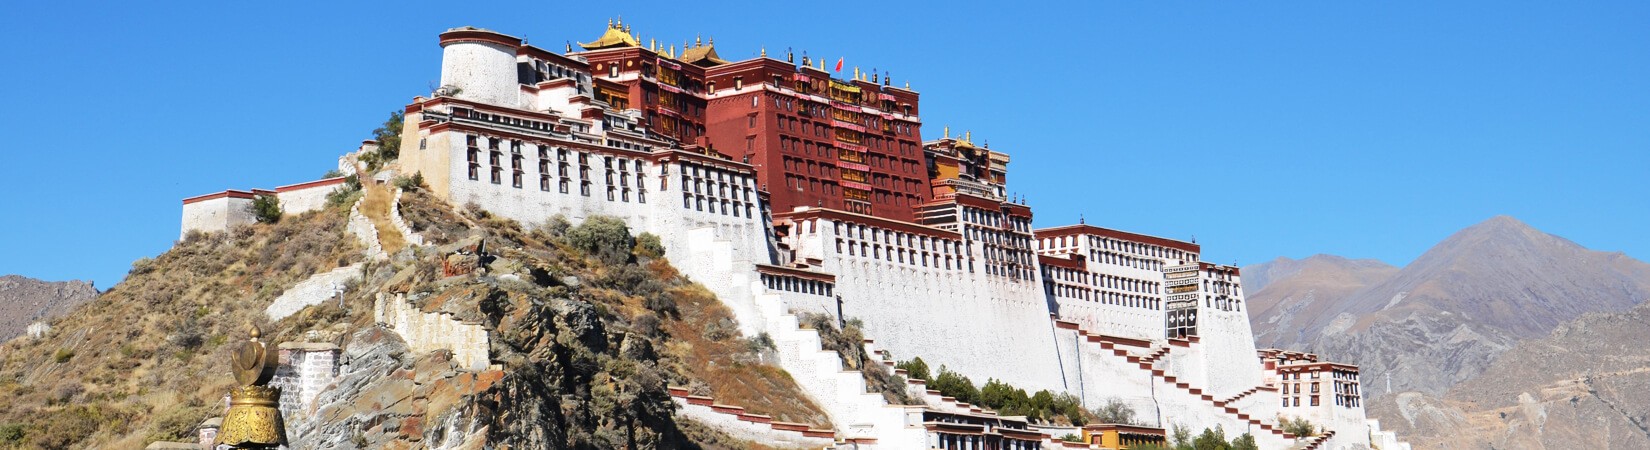 Potola Place, Lhasa. Tibet